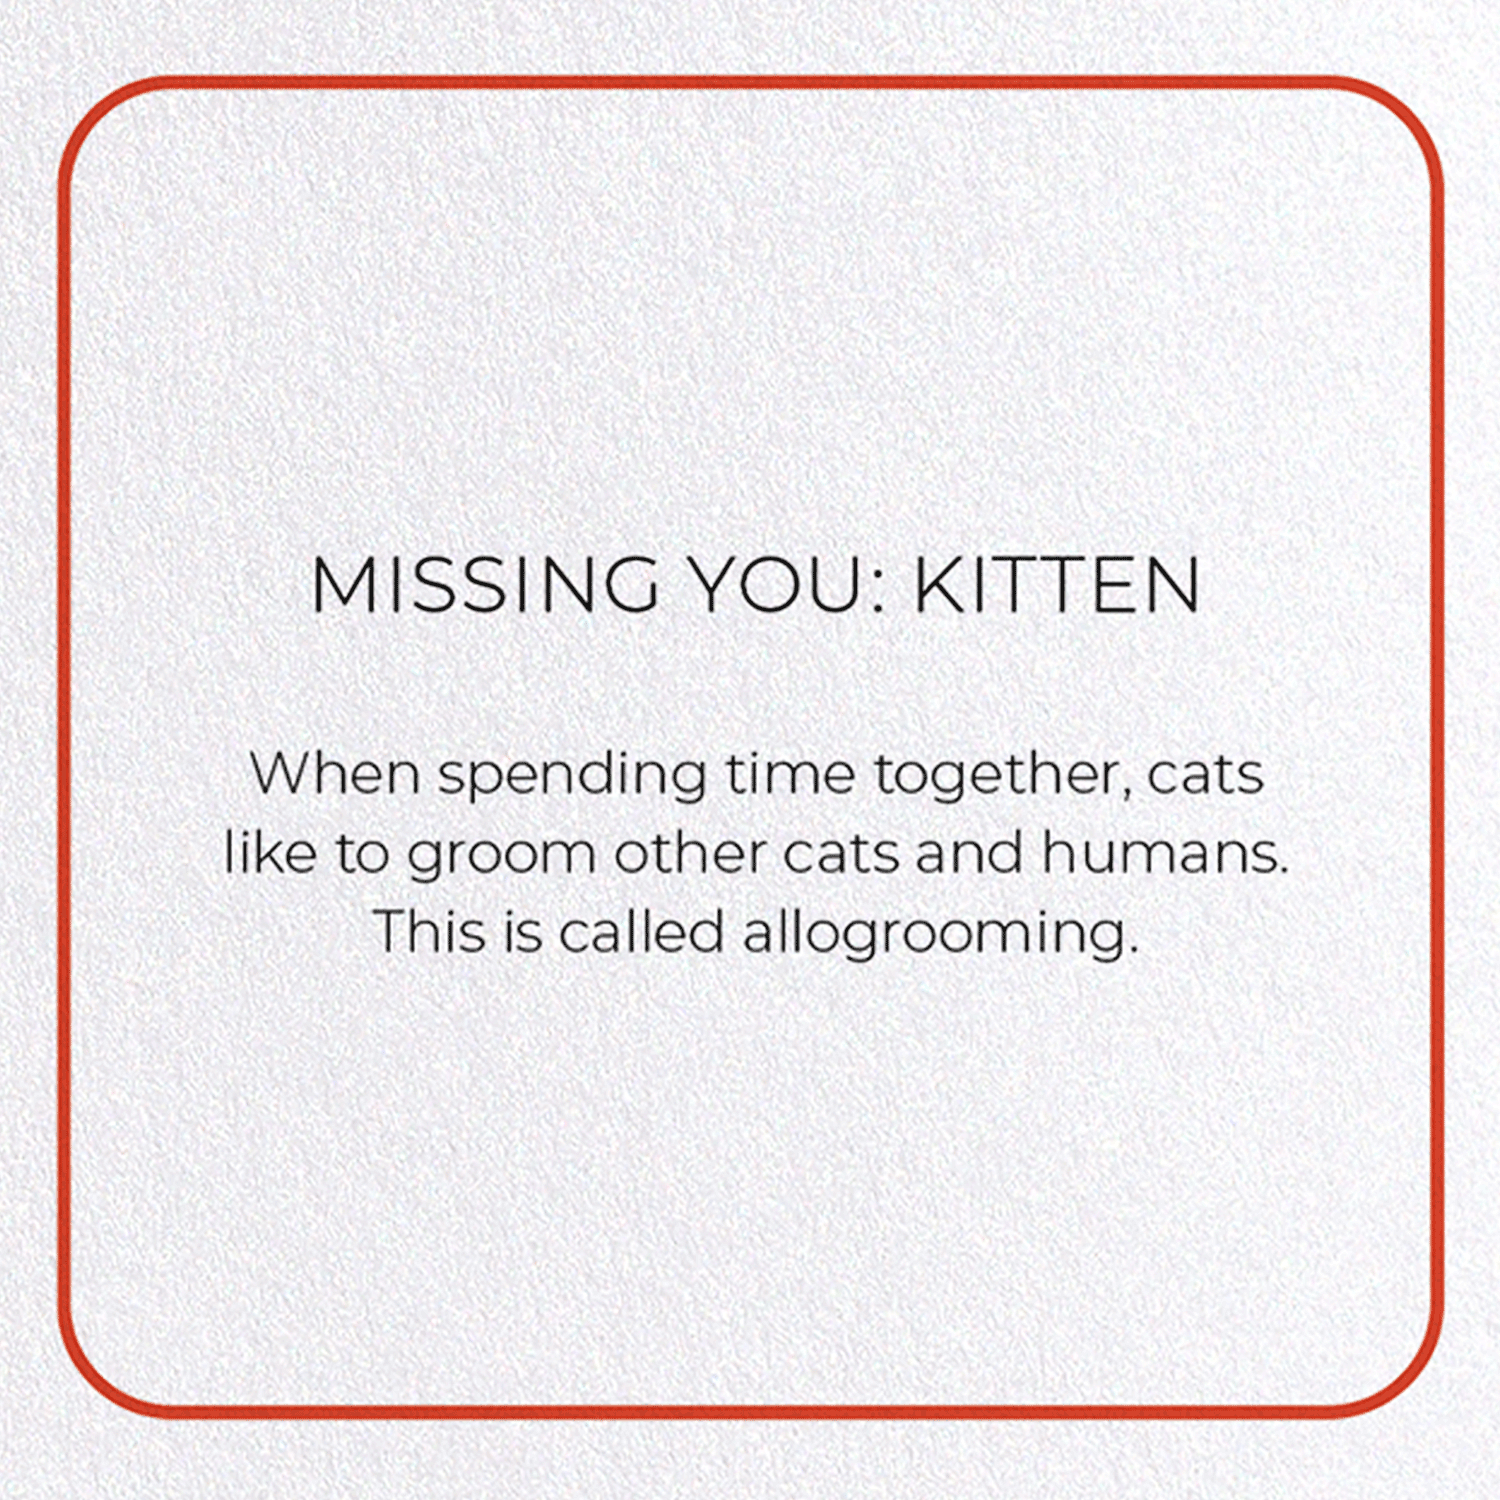 MISSING YOU: KITTEN